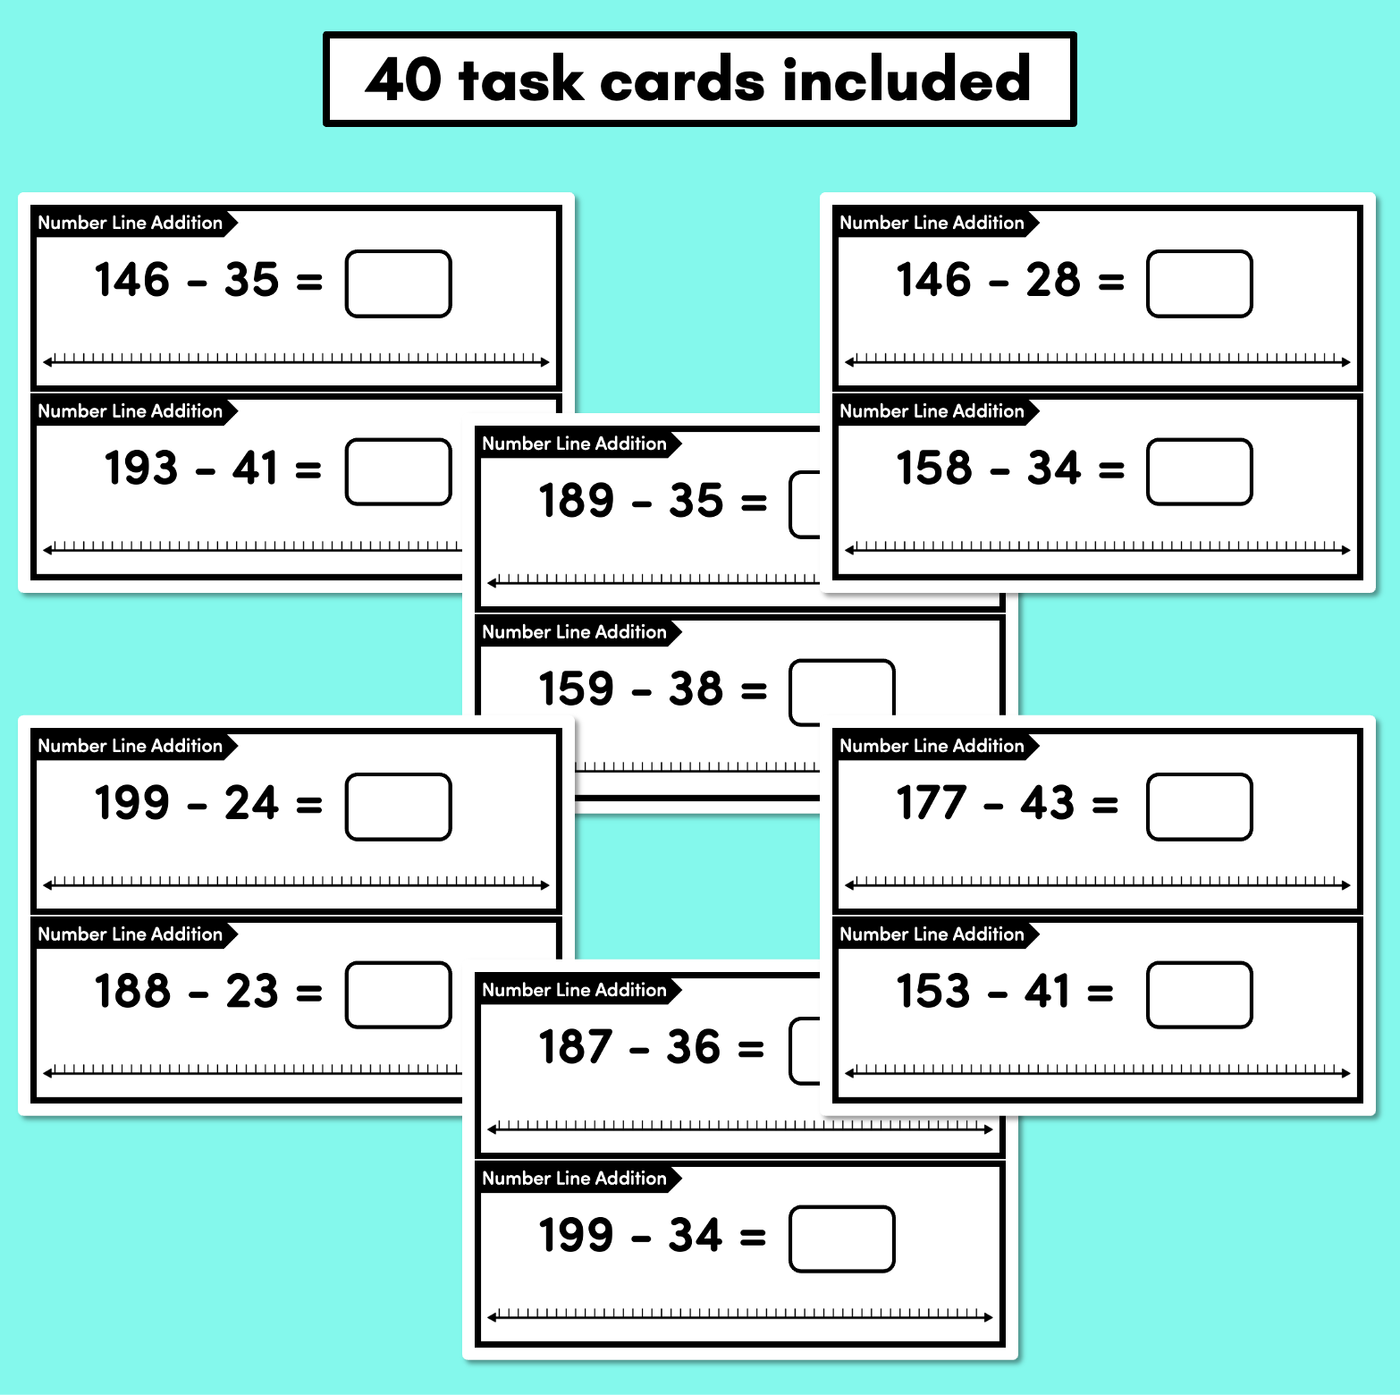 Number Line Subtraction Task Cards Level 3: Subtracting 2-digit numbers from 3-digit numbers (Jump Strategy)